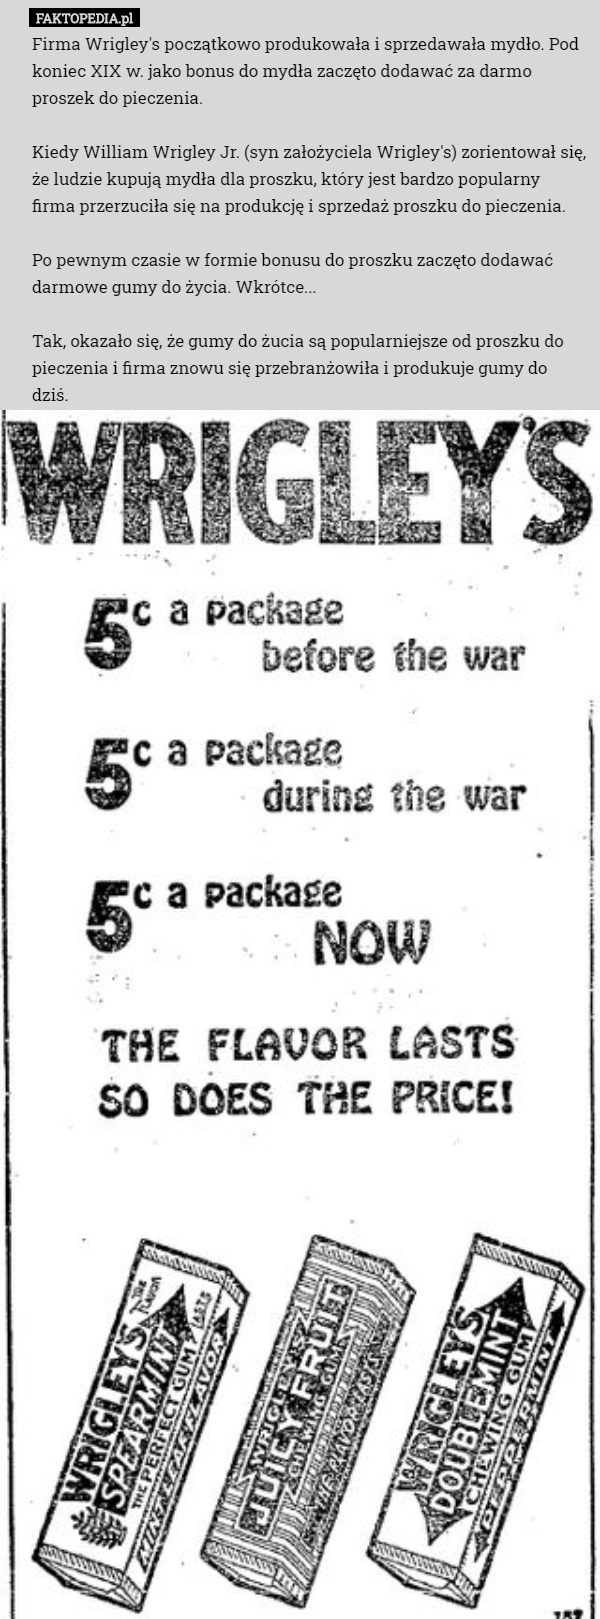 Firma Wrigley's początkowo produkowała i sprzedawała mydło. Pod koniec